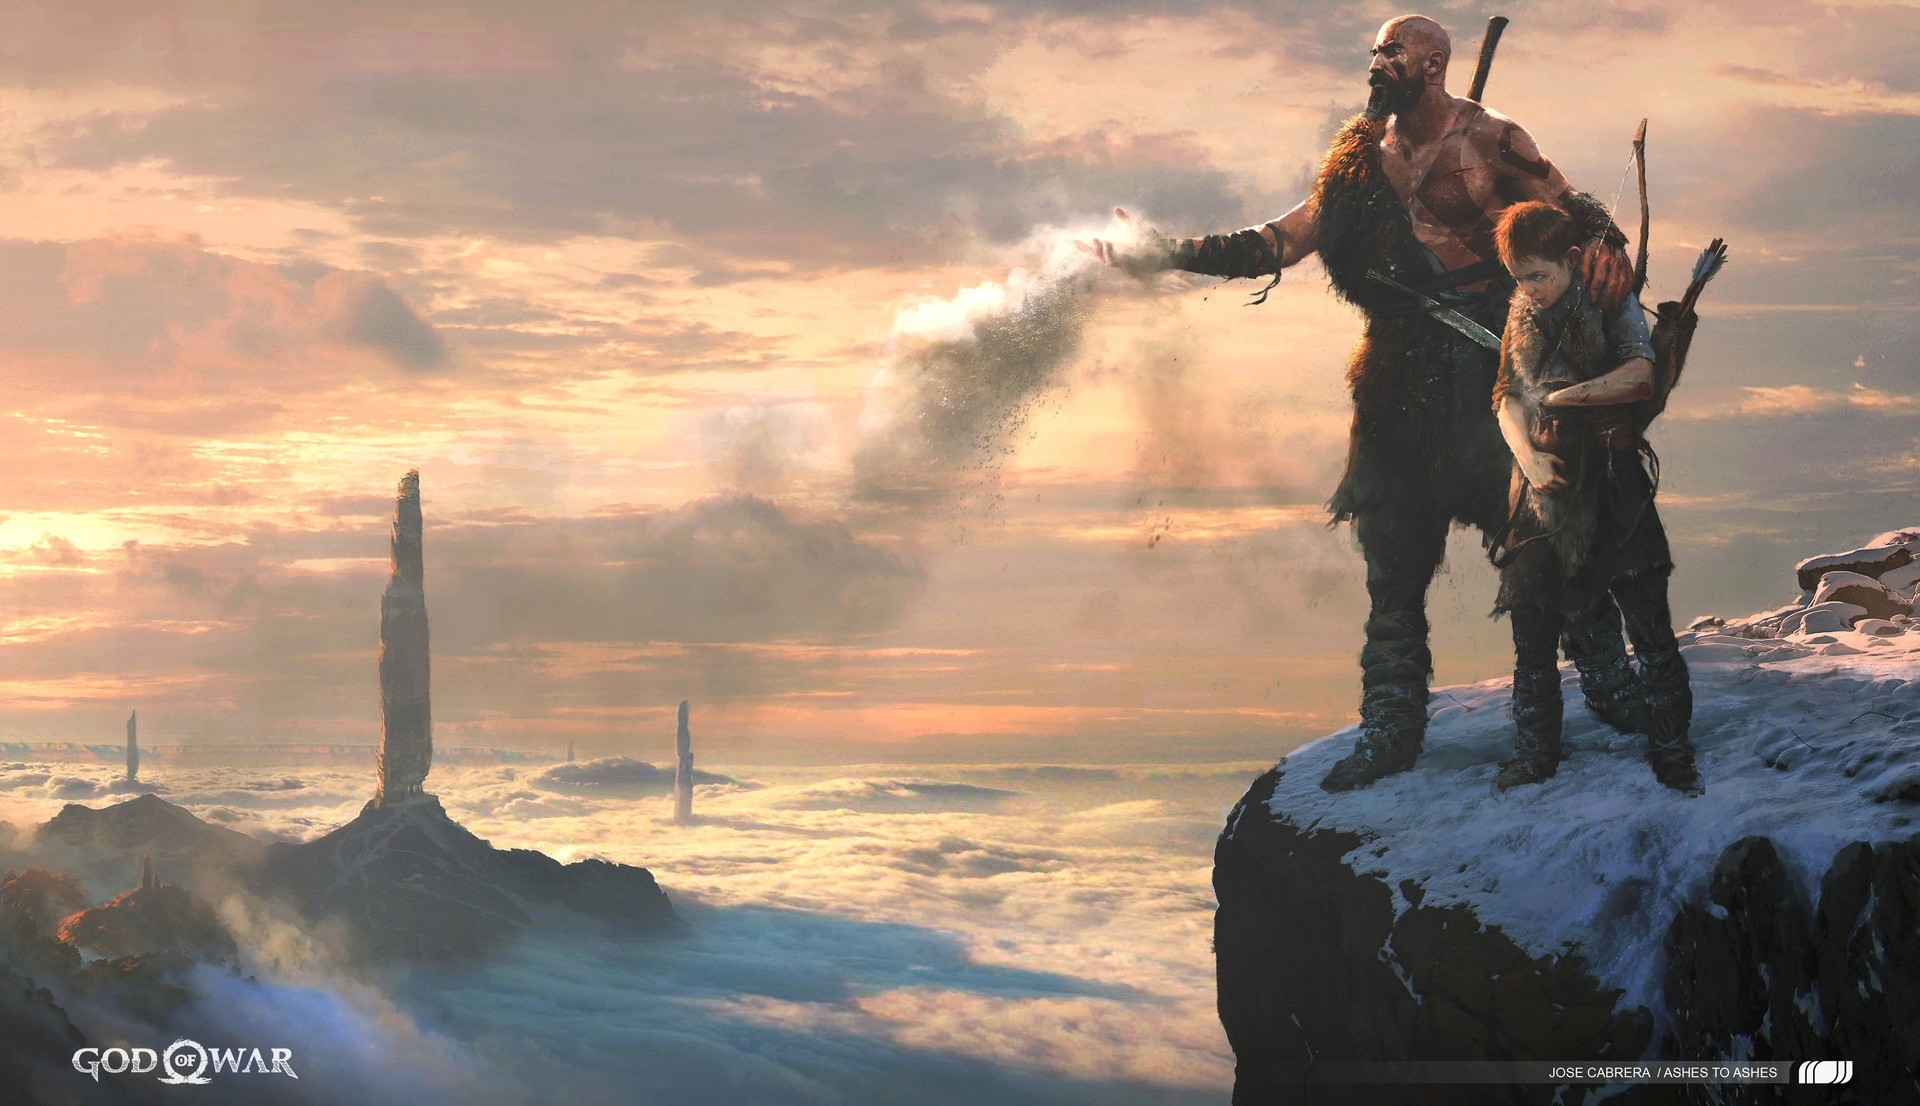 God of War Ragnarok เลื่อนไปปี 2022 แทน แต่มีวางจำหน่ายให้กับ PlayStation 4 ด้วย